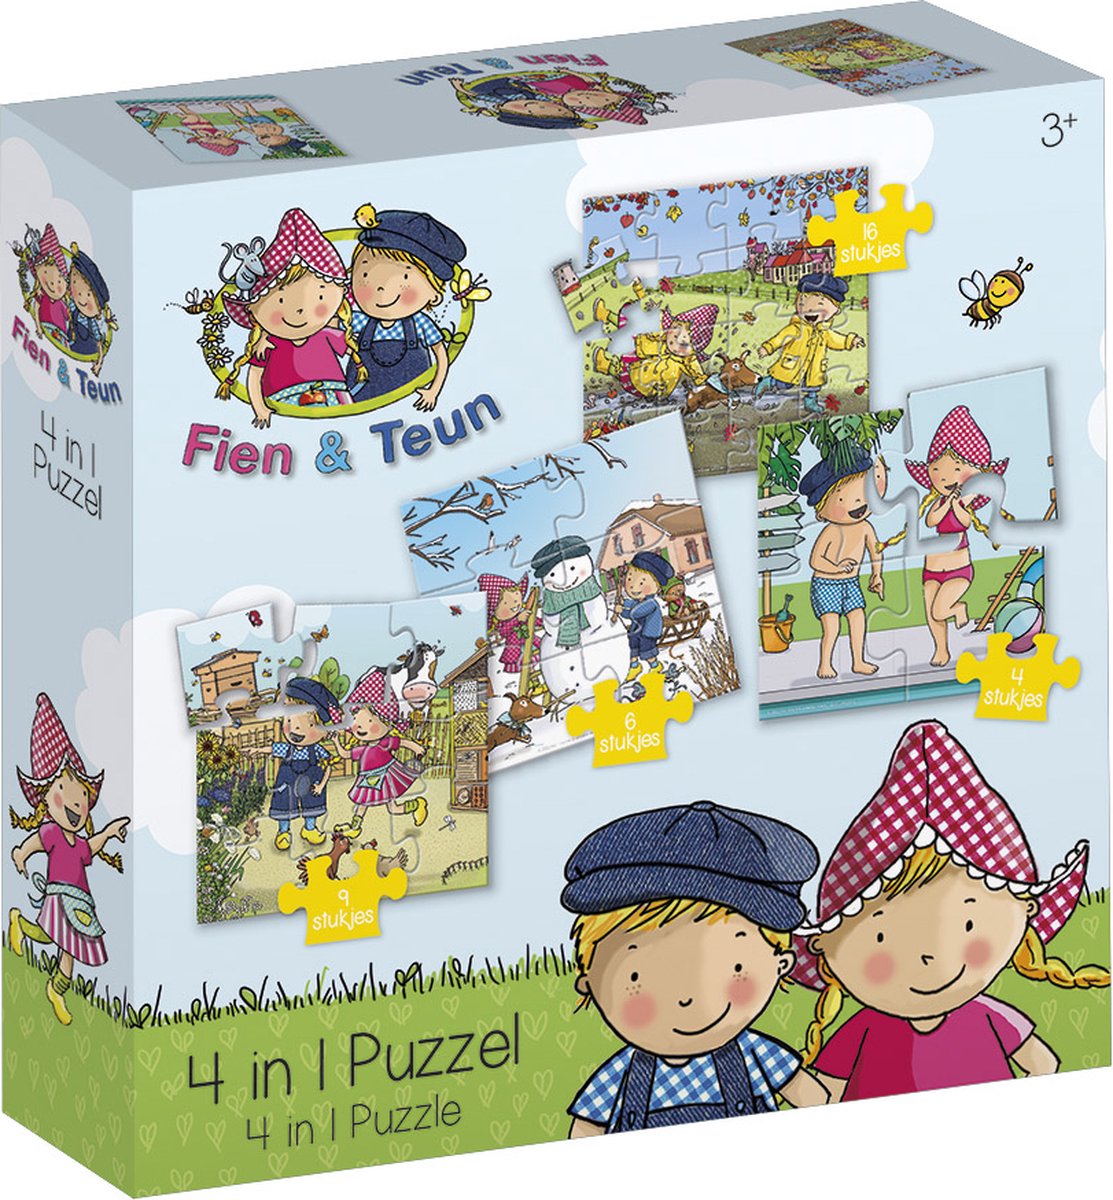 Fien & Teun puzzel 4 in 1 educatief peuter speelgoed - kinderpuzzel 4x6x9x16 stukjes leren puzzelen - cadeautip puzzel 3 jaar en ouder - Bambolino Toys